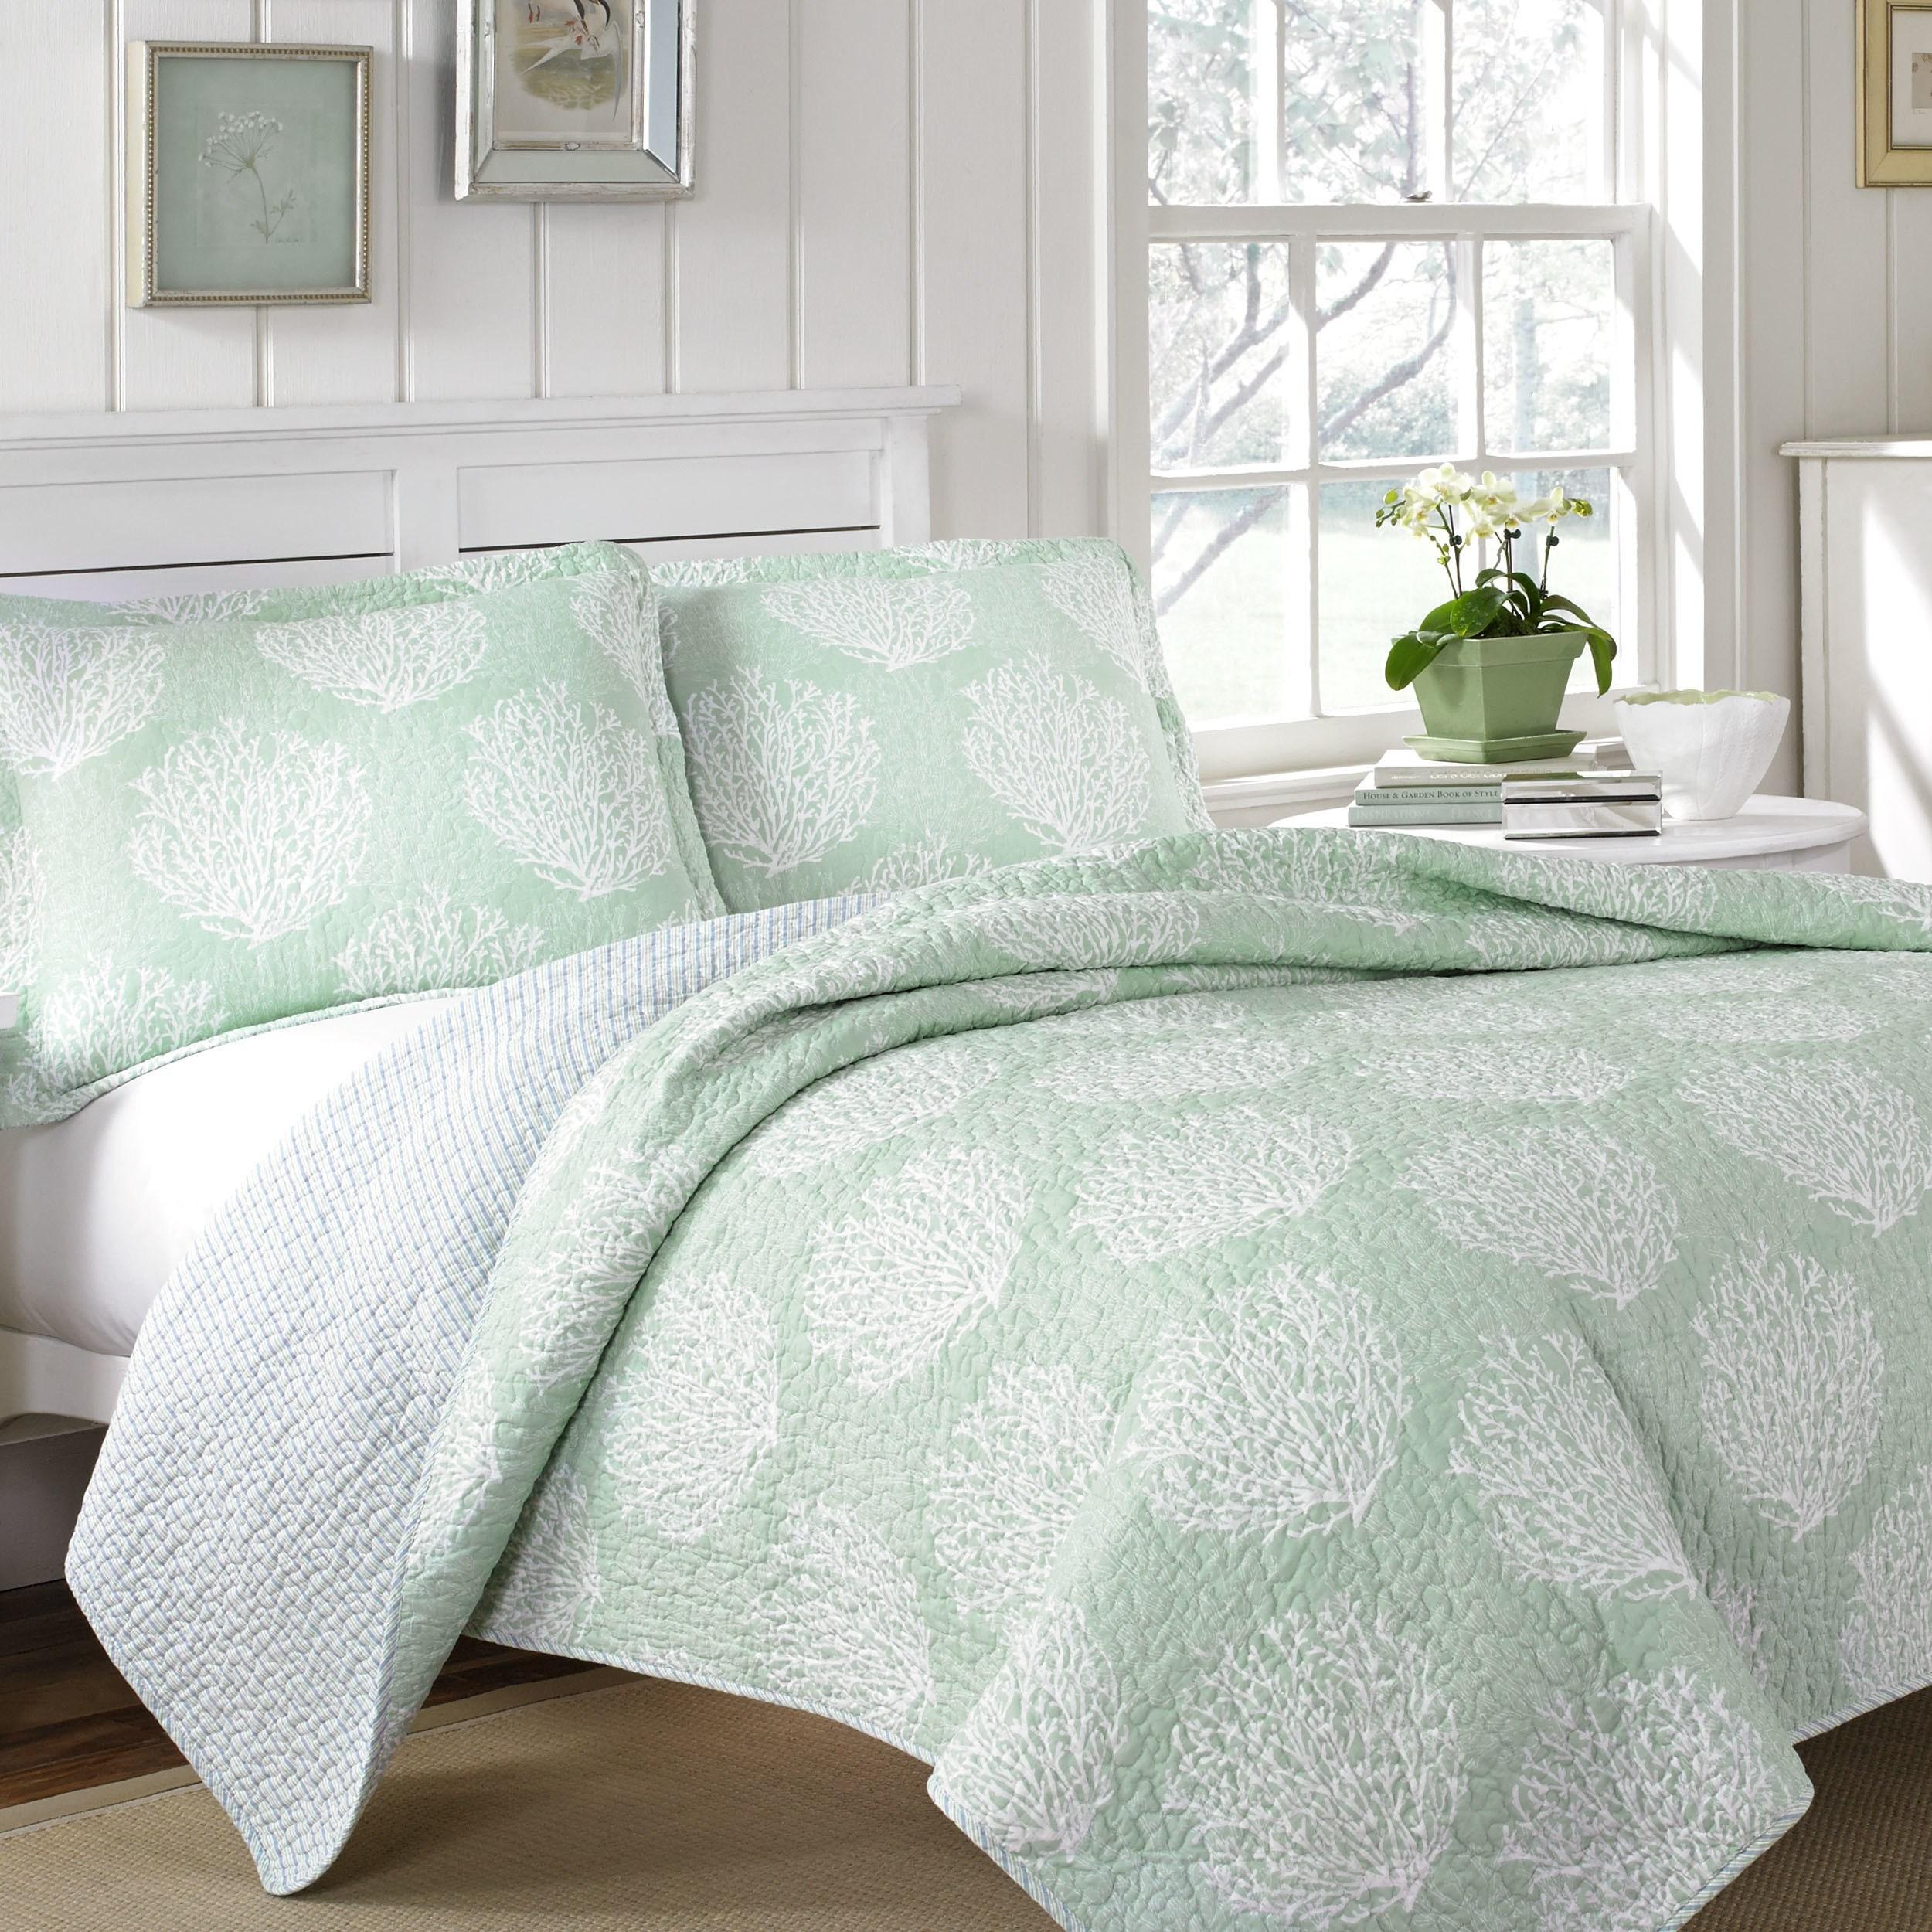 laura ashley wallpaper descatalogado,sábana,verde,funda de edredón,mueble,textil